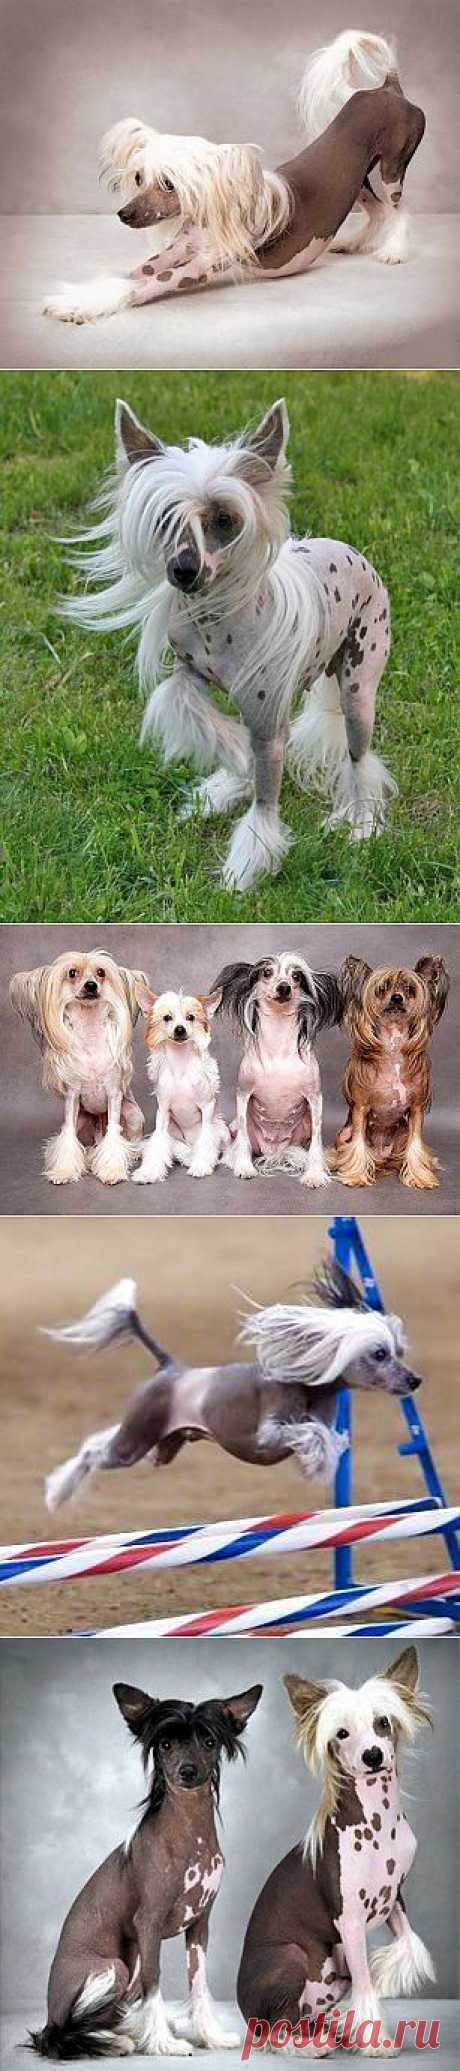 Китайская хохлатая собака - описание породы, фото, питомники, щенки | Animal.ru